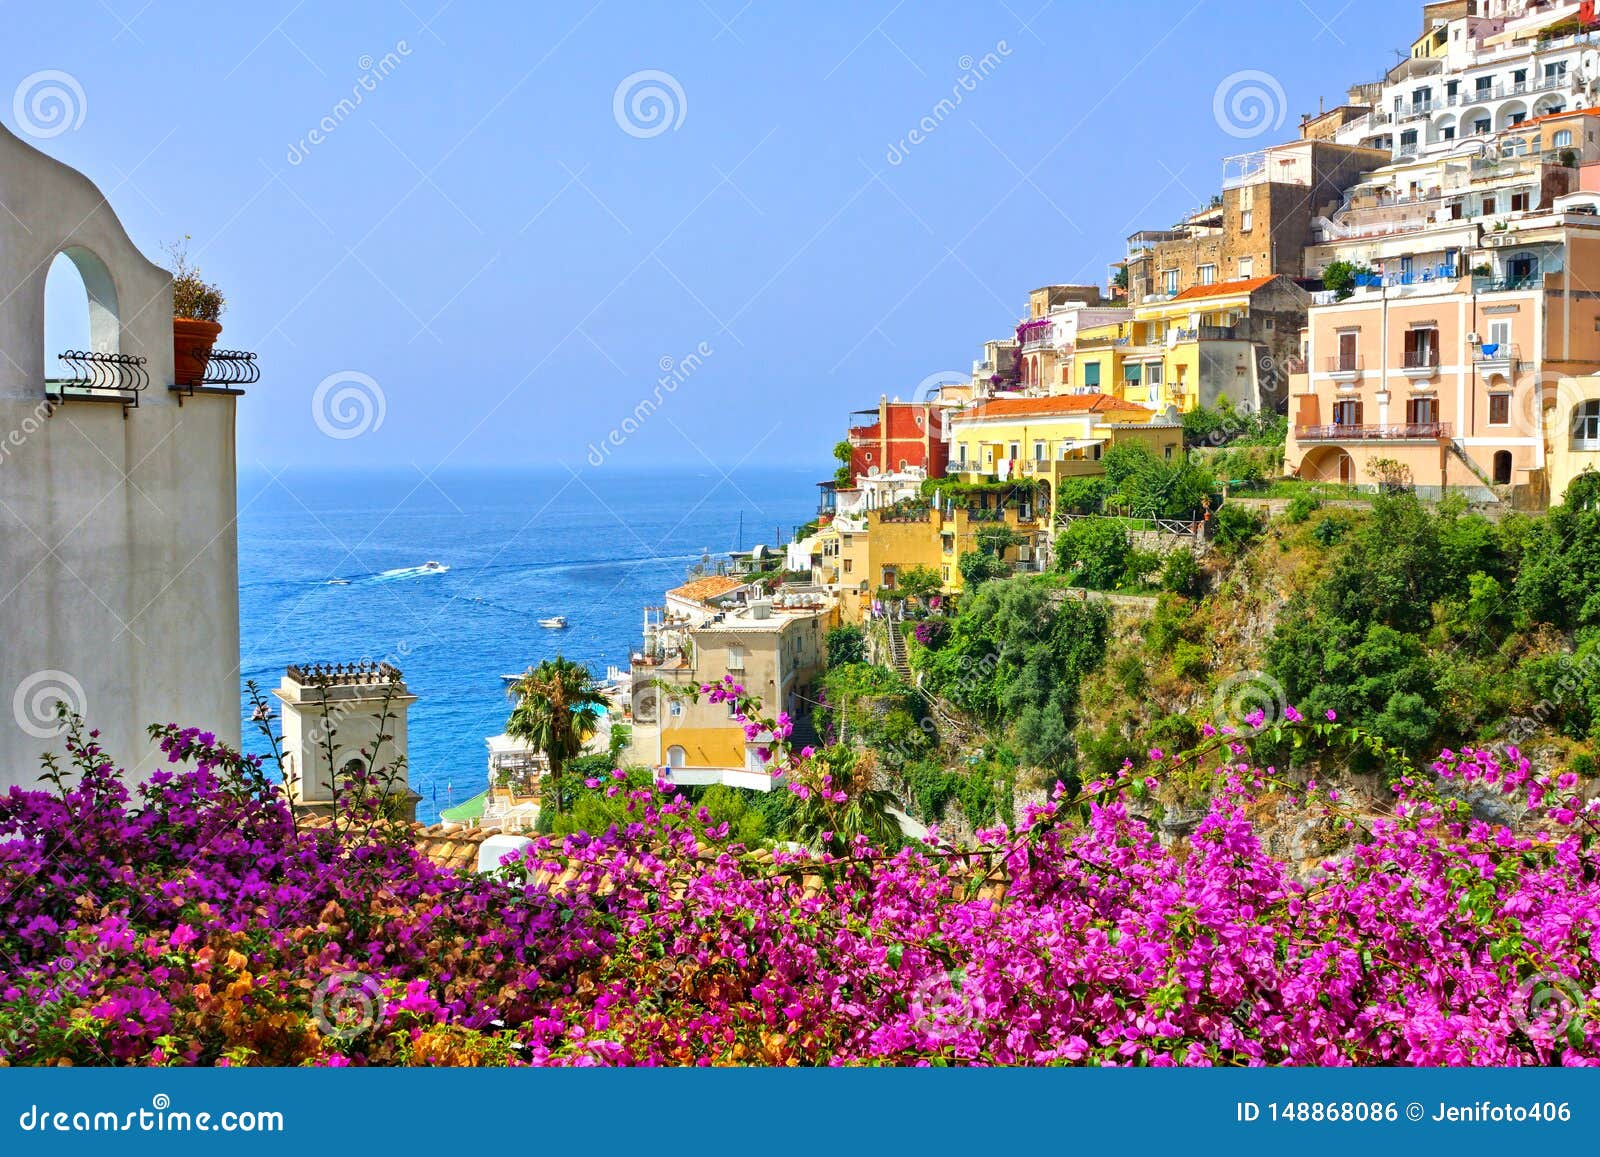 Fiori Variopinti E Costruzioni in Positano, Costa Di Amalfi, Italia  Fotografia Stock - Immagine di casa, mare: 148868086